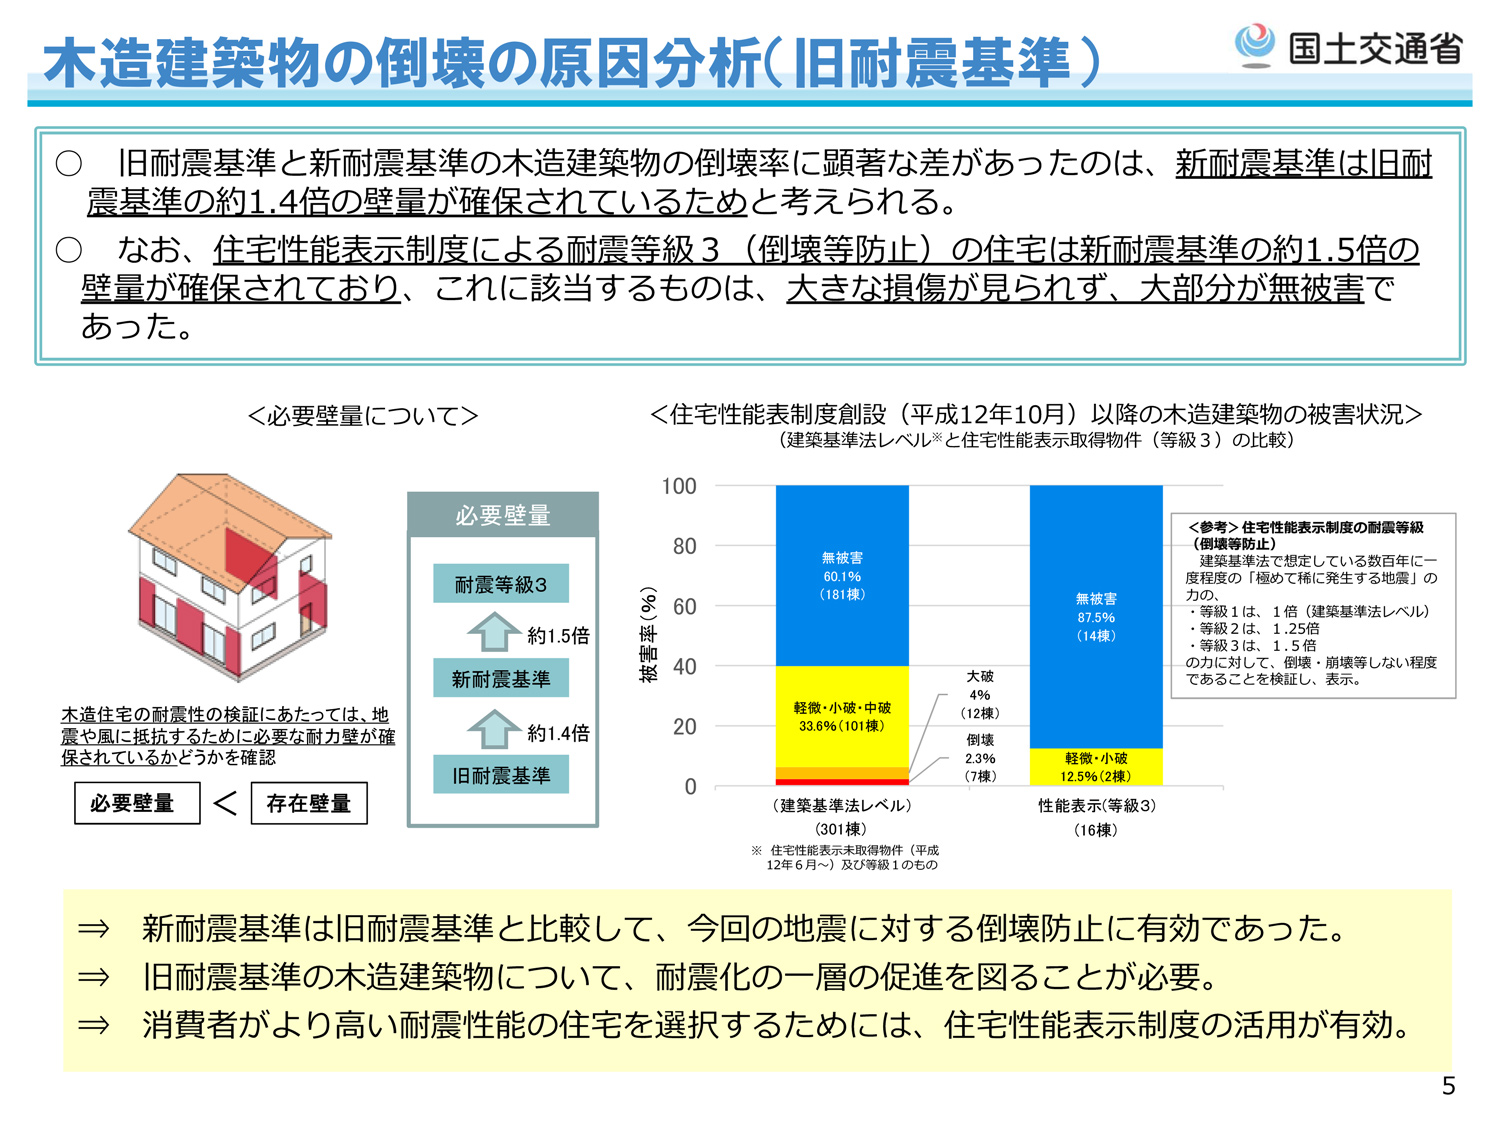 「熊本地震における建築物被害の原因分析を行う委員会」報告書のポイント